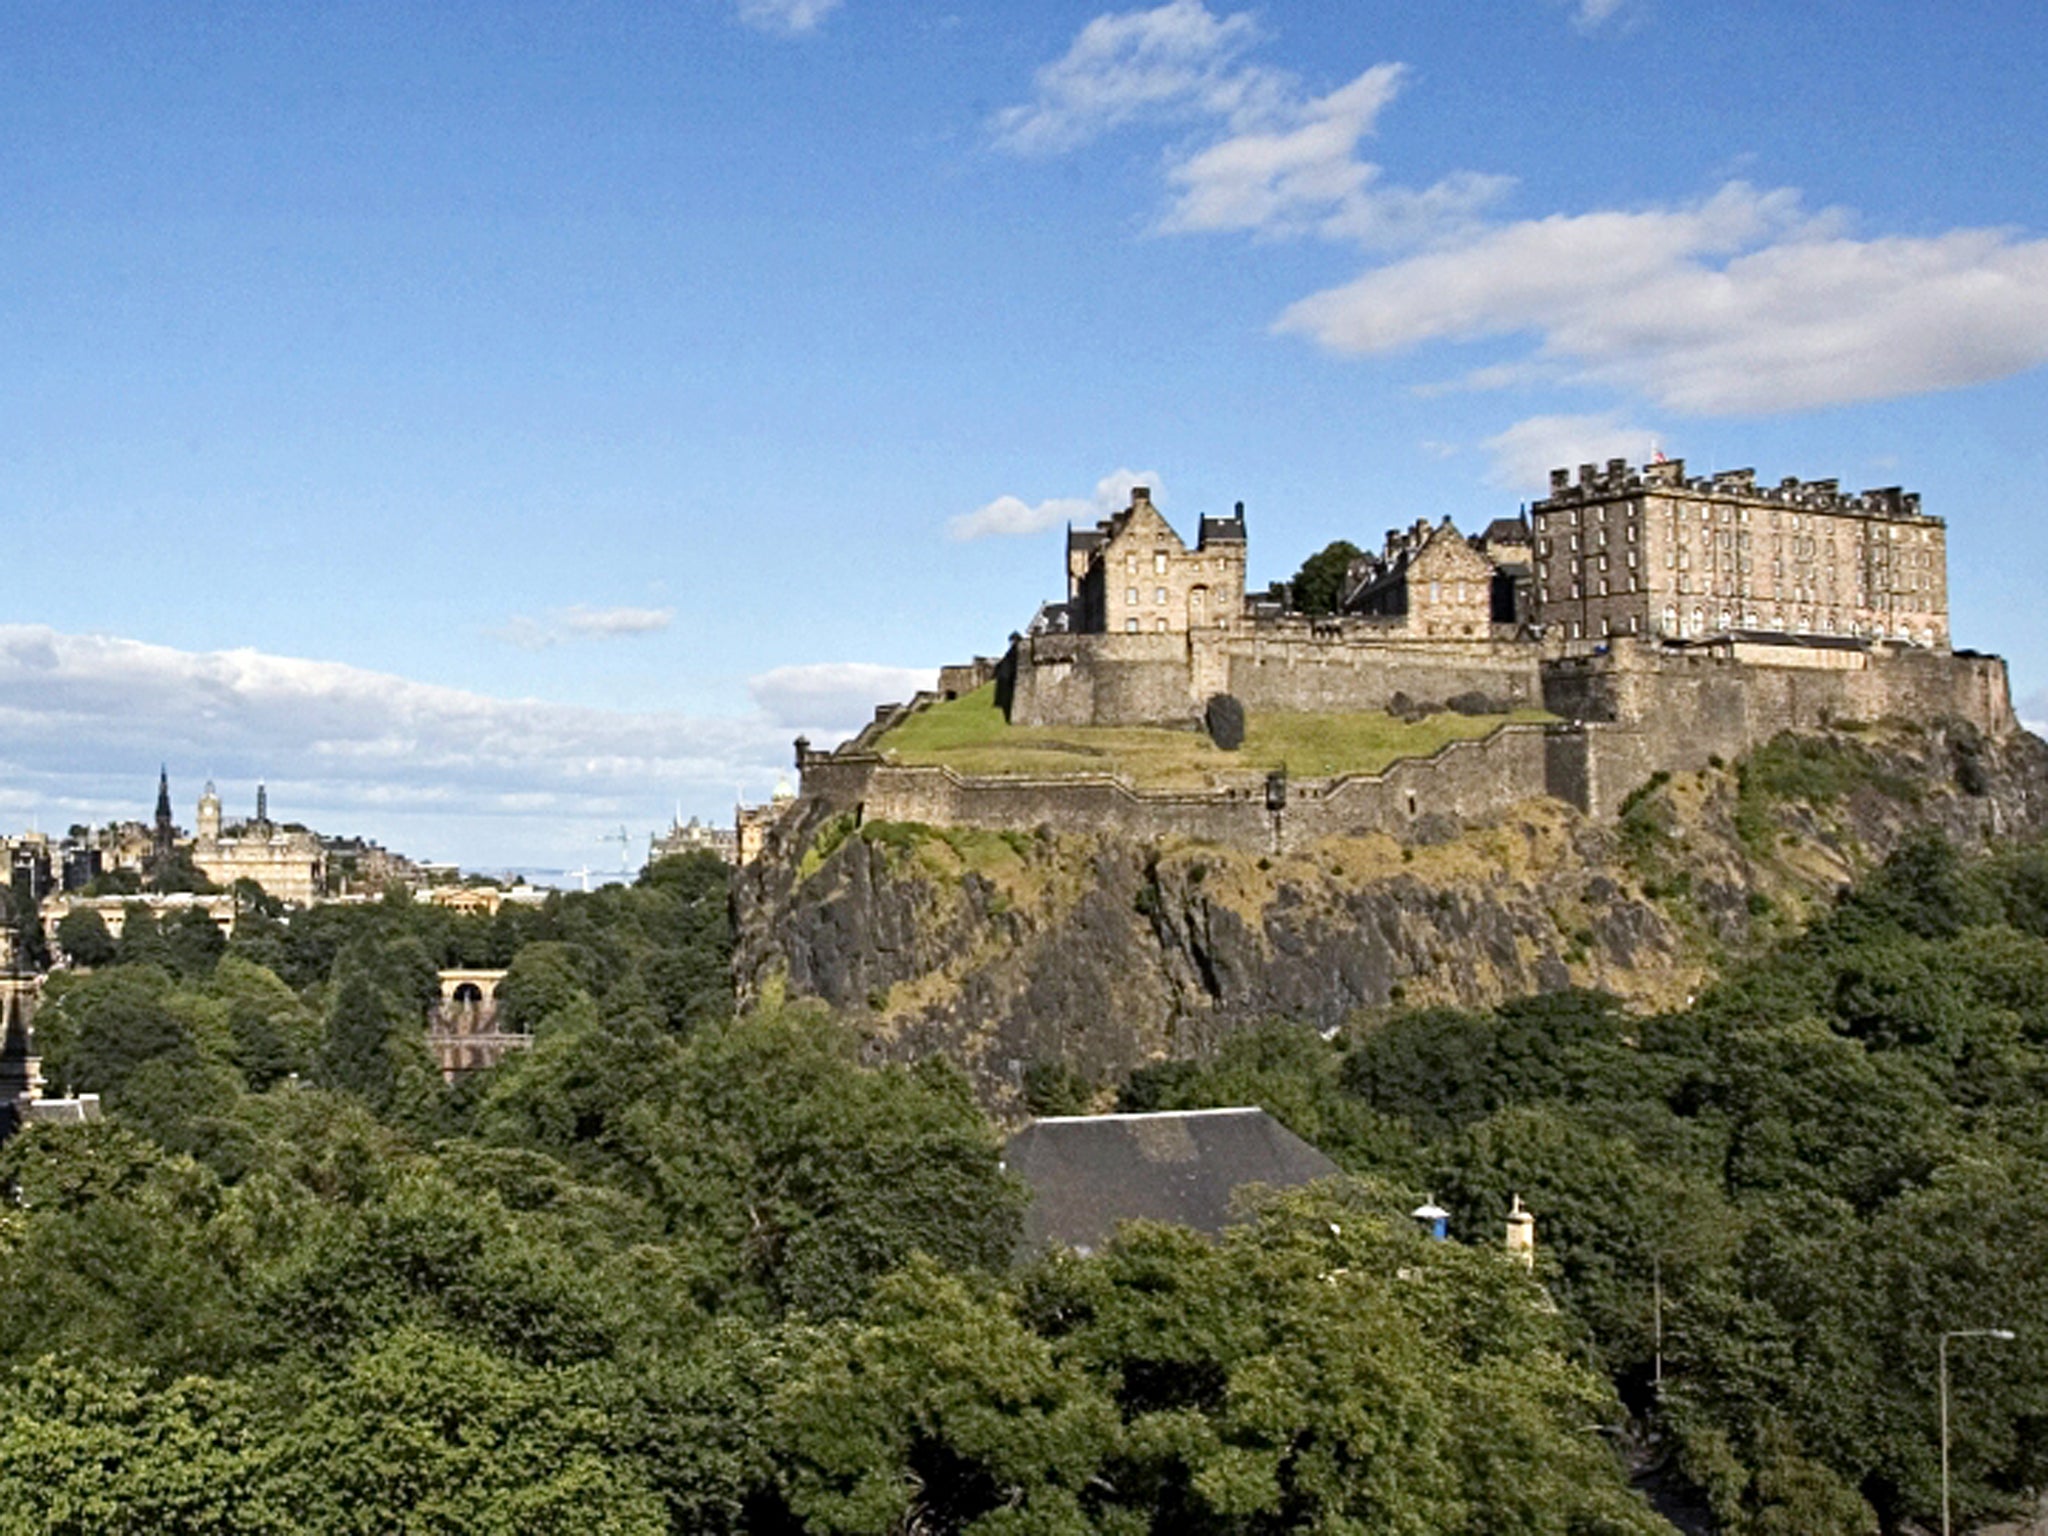 High and mighty: Edinburgh Castle and city skyline